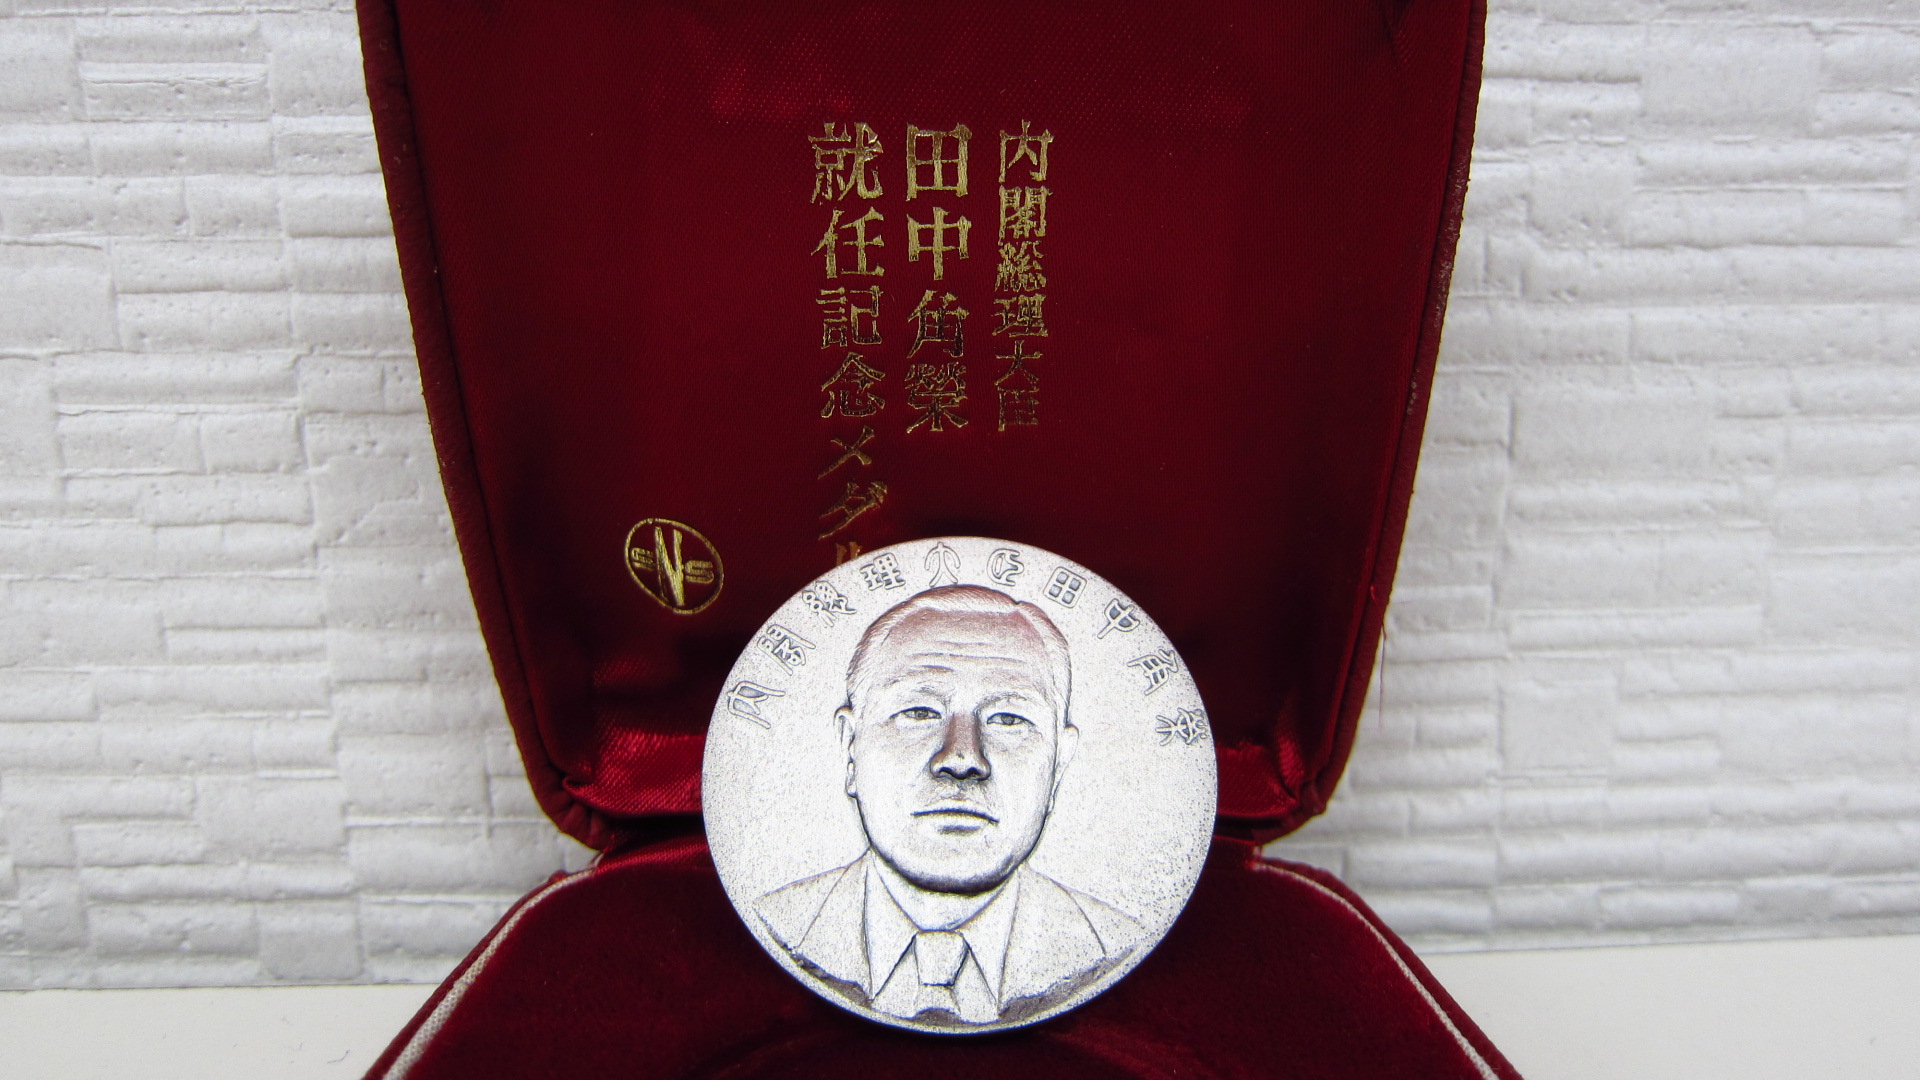 純銀メダル 田中角栄 内閣総理大臣 就任記念 記念メダル お持ち頂き